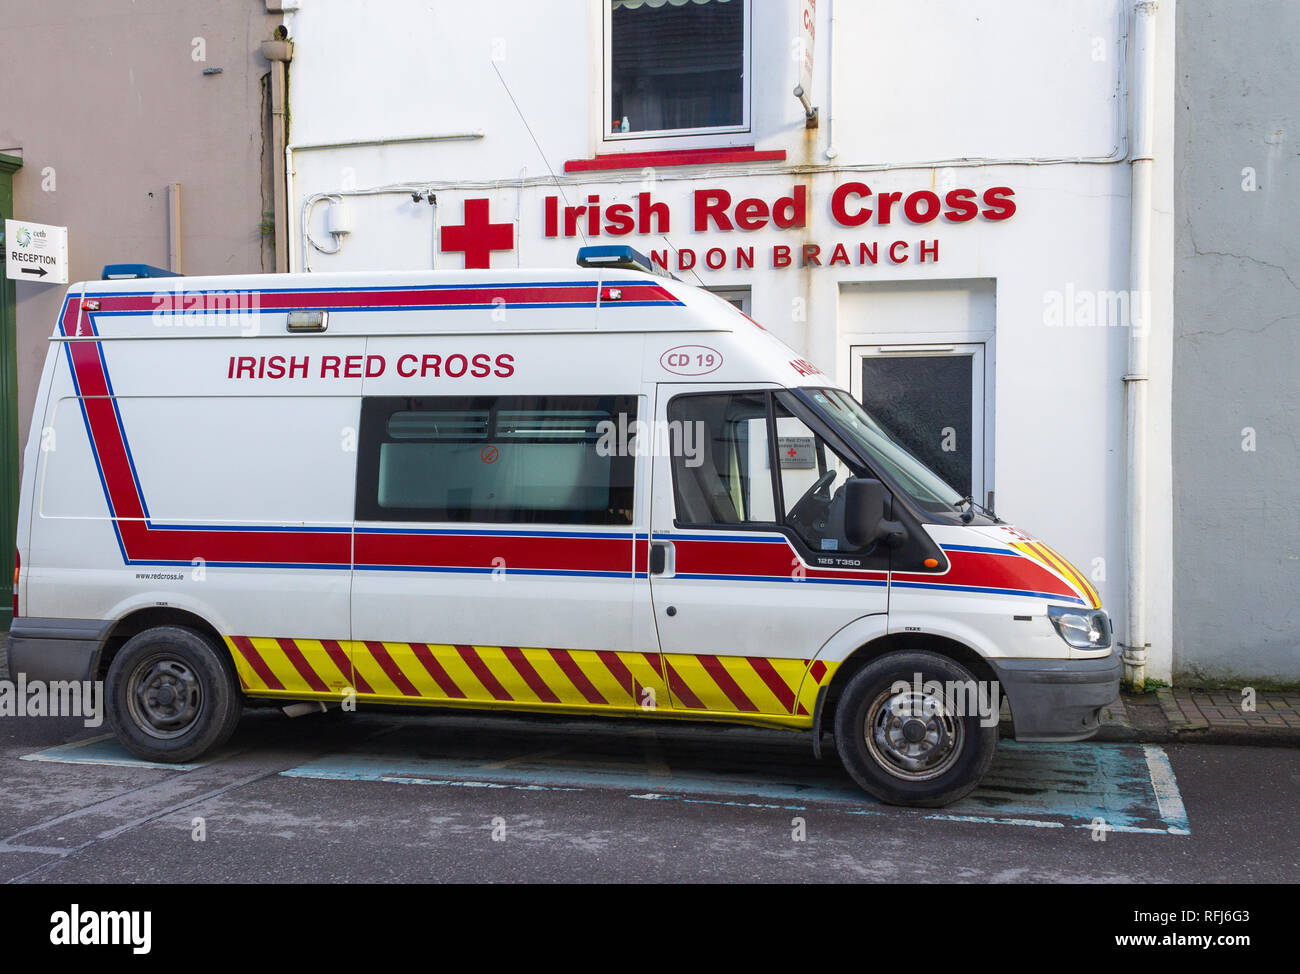 Ambulancia de la Cruz Roja Irlandesa estacionados fuera de cruz roja sucursal bandon Irlanda Foto de stock